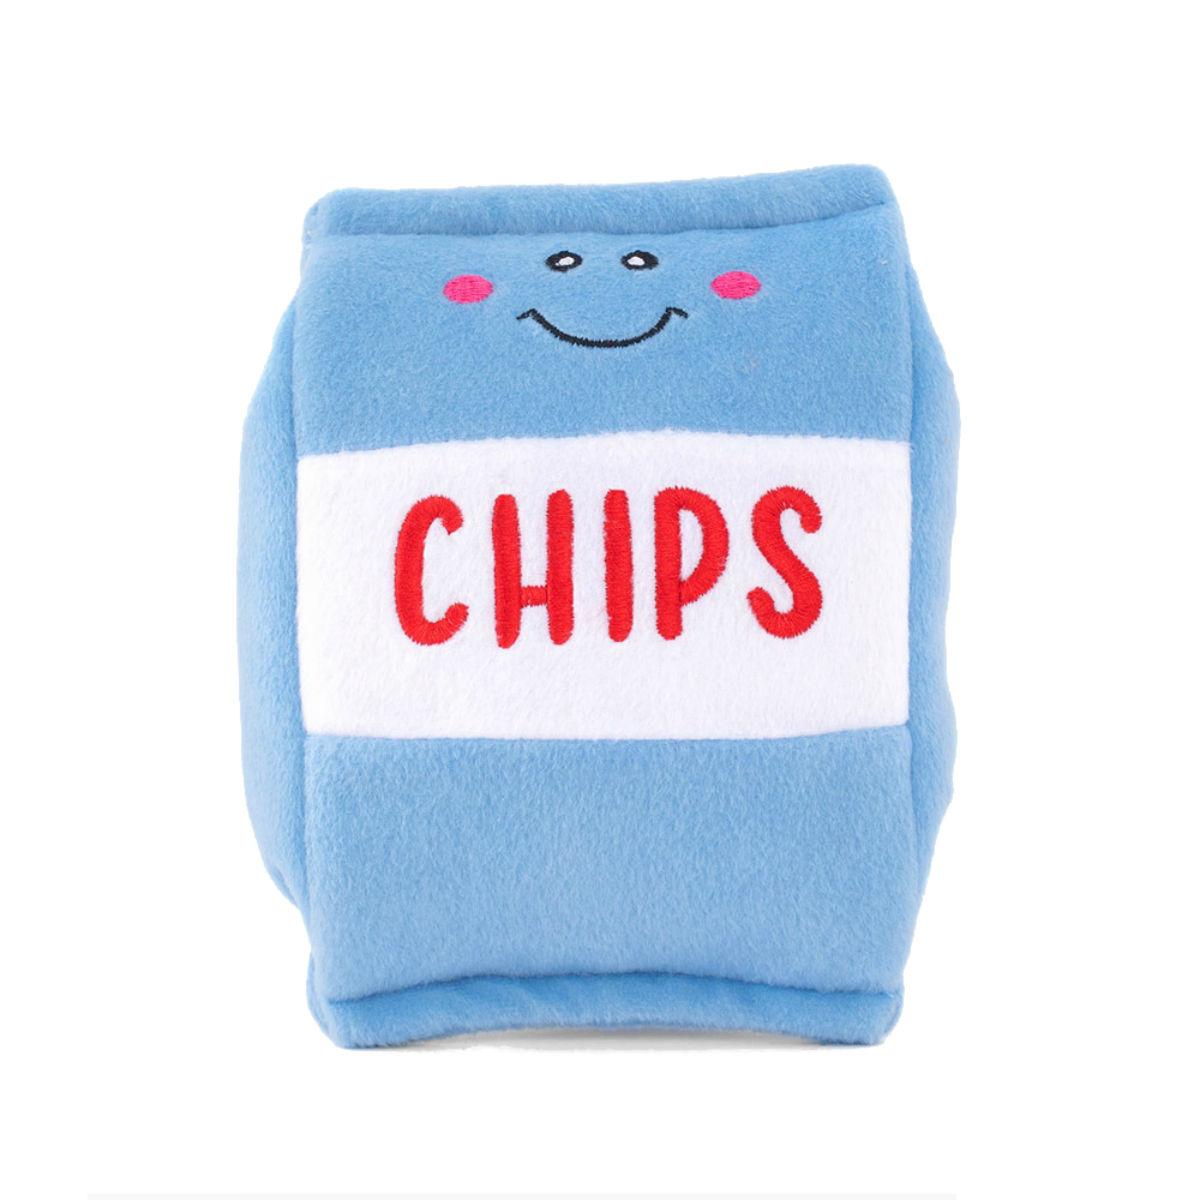 ZippyPaws NomNomz Dog Toy - Chips